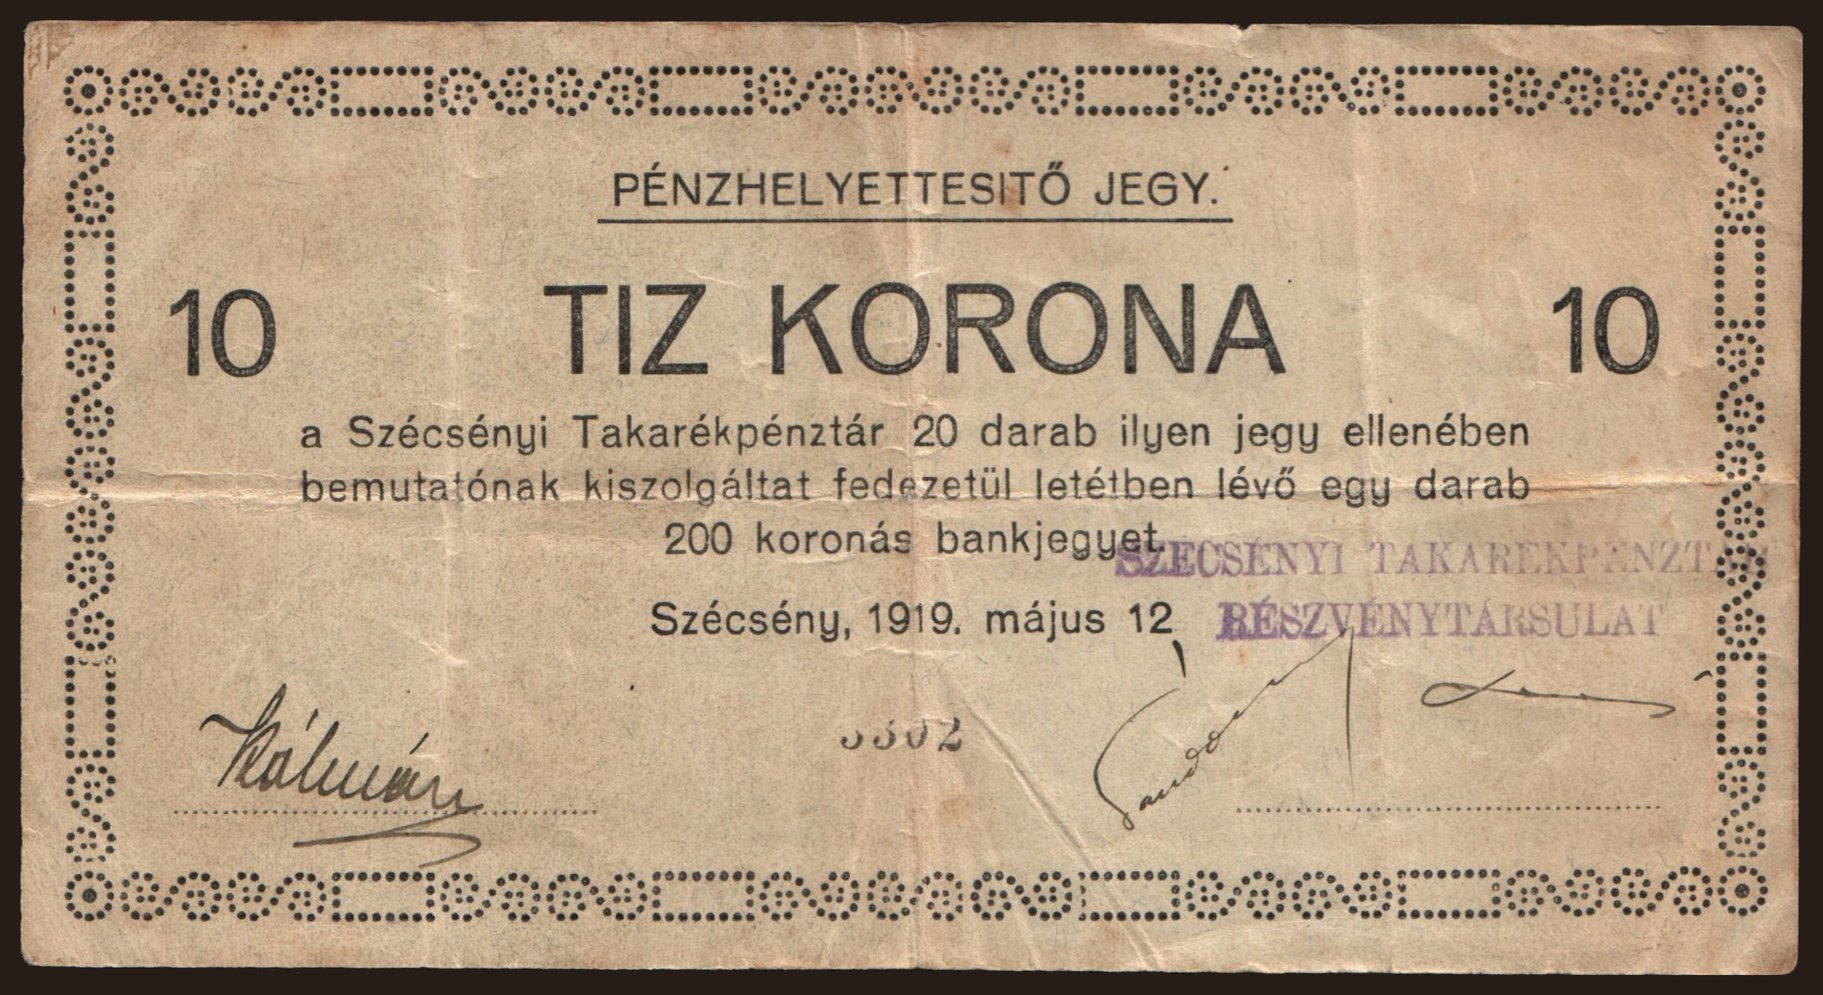 Szécsény/ Szécsényi Takarékpénztár, 10 korona, 1919